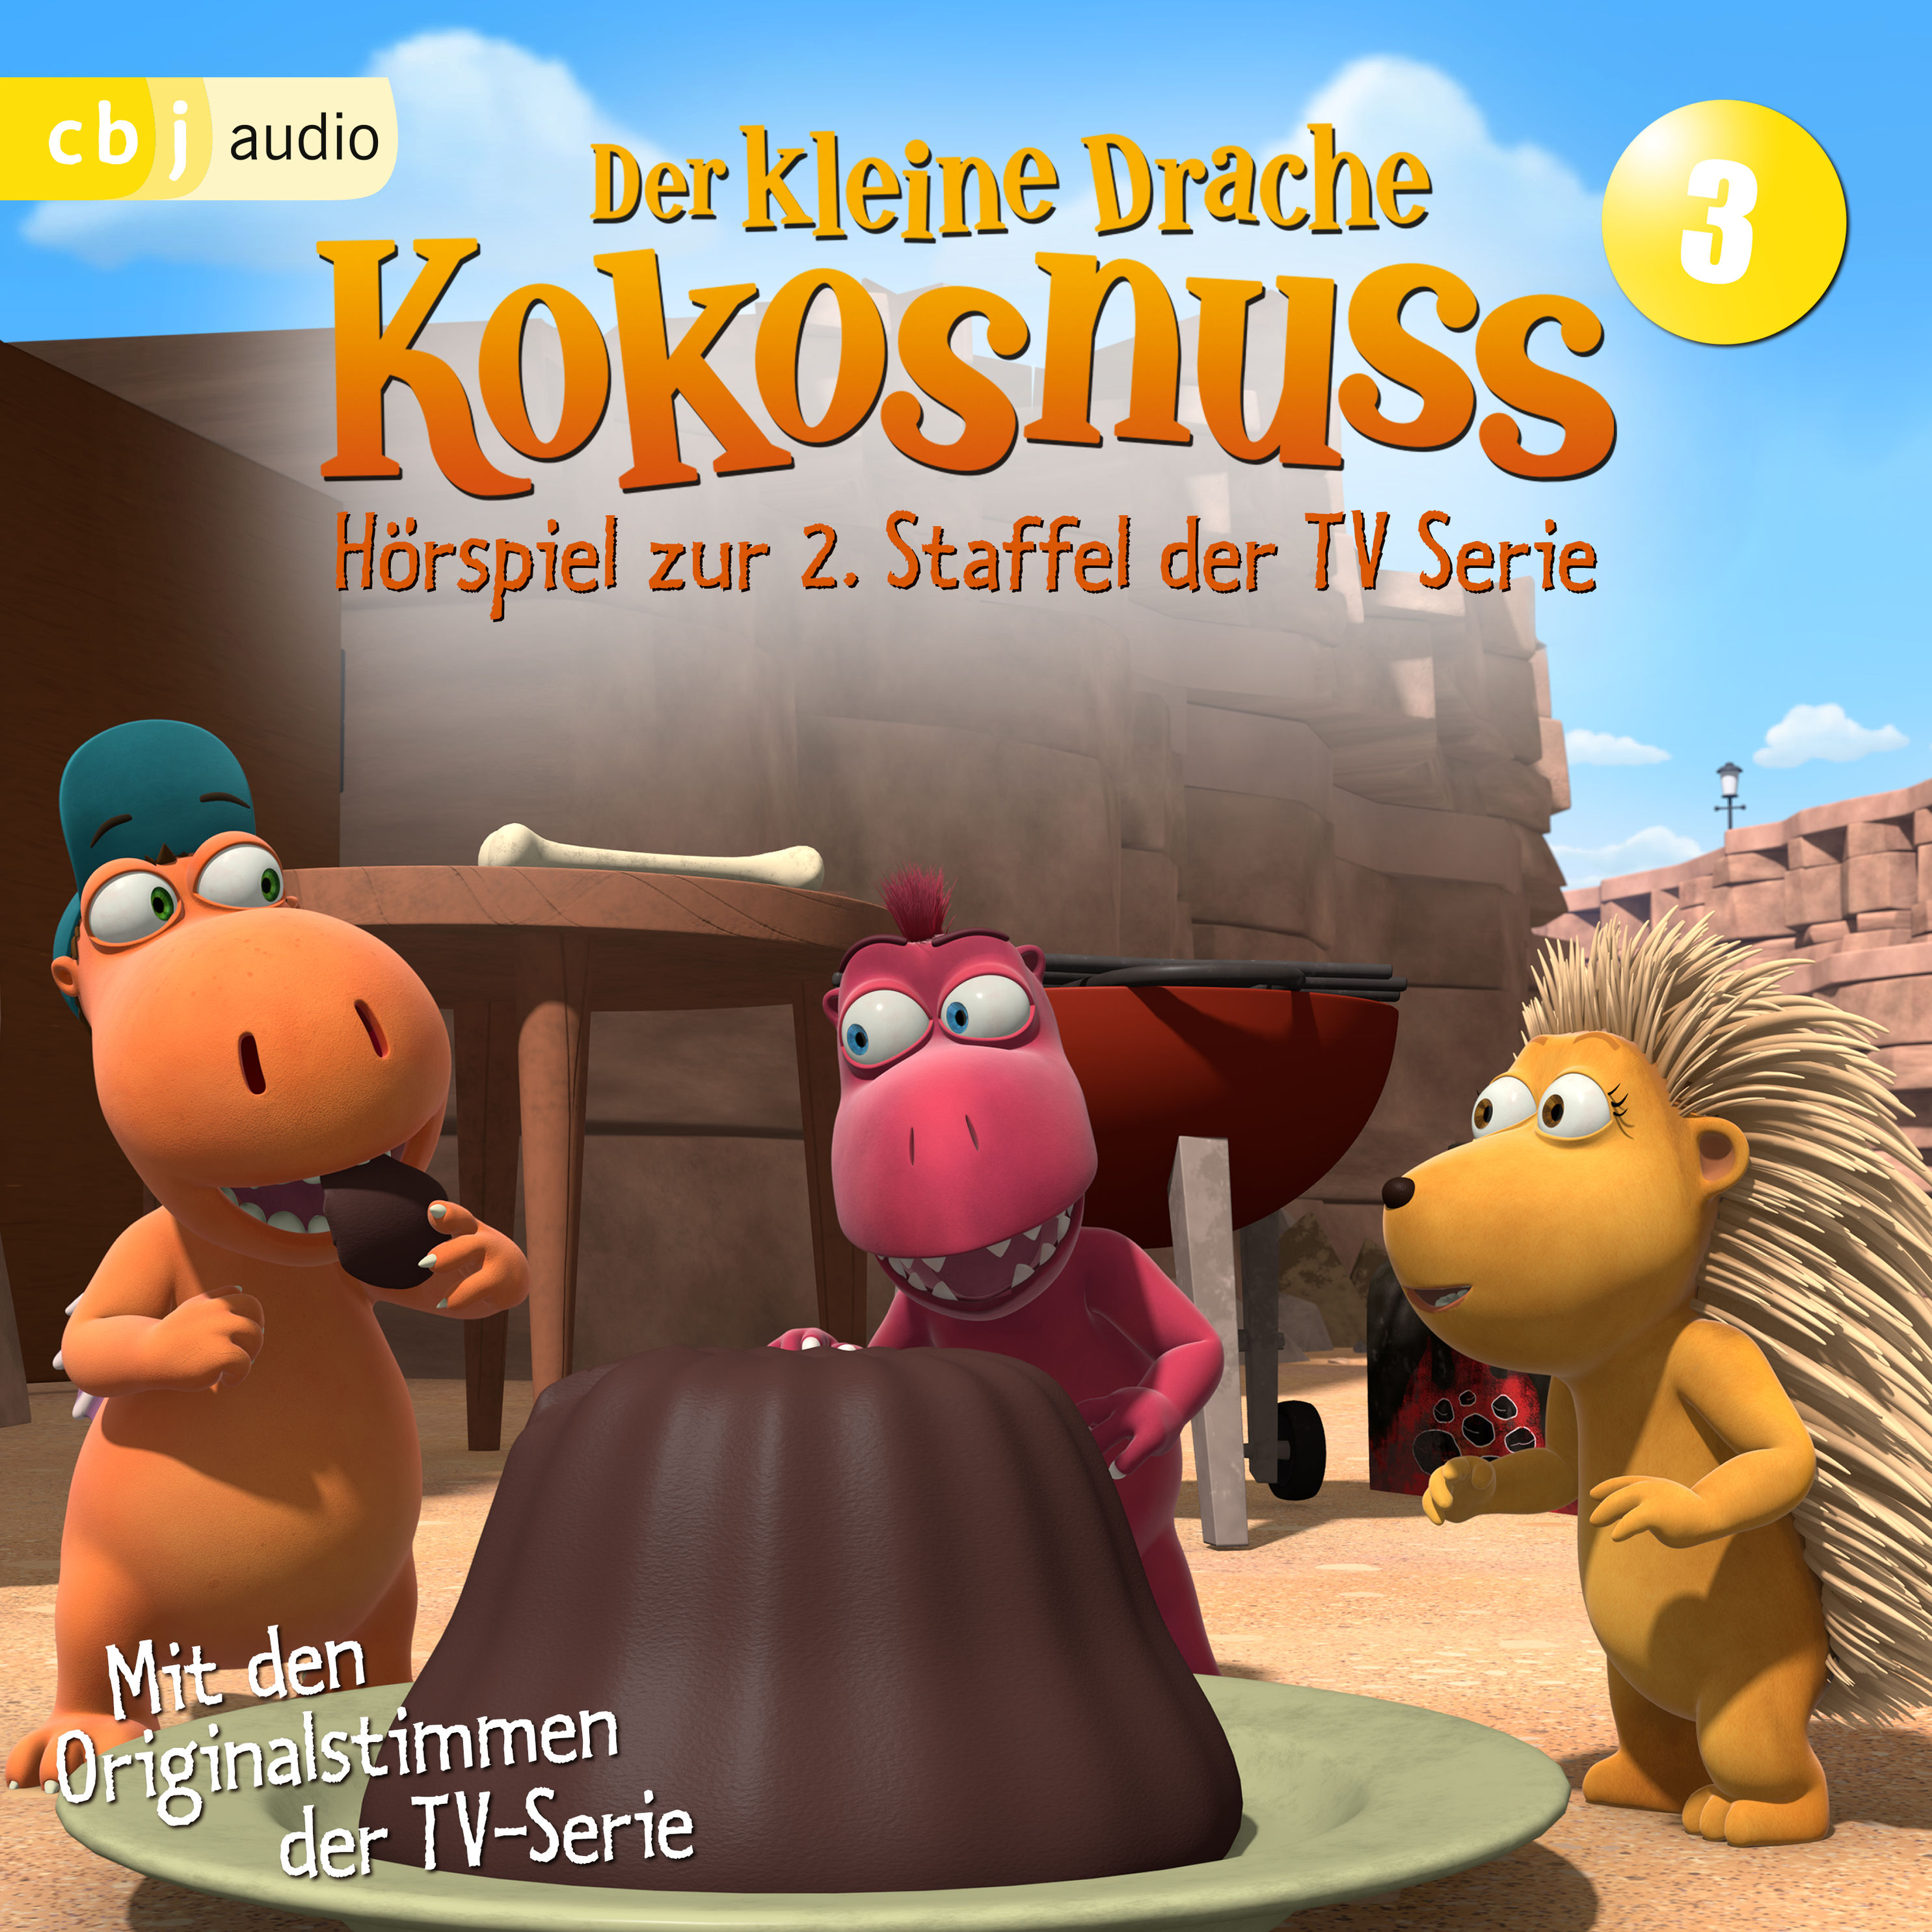 Der Kleine Drache Kokosnuss - Hörspiel zur 2. Staffel der TV-Serie 03 -  Hörbuch Download